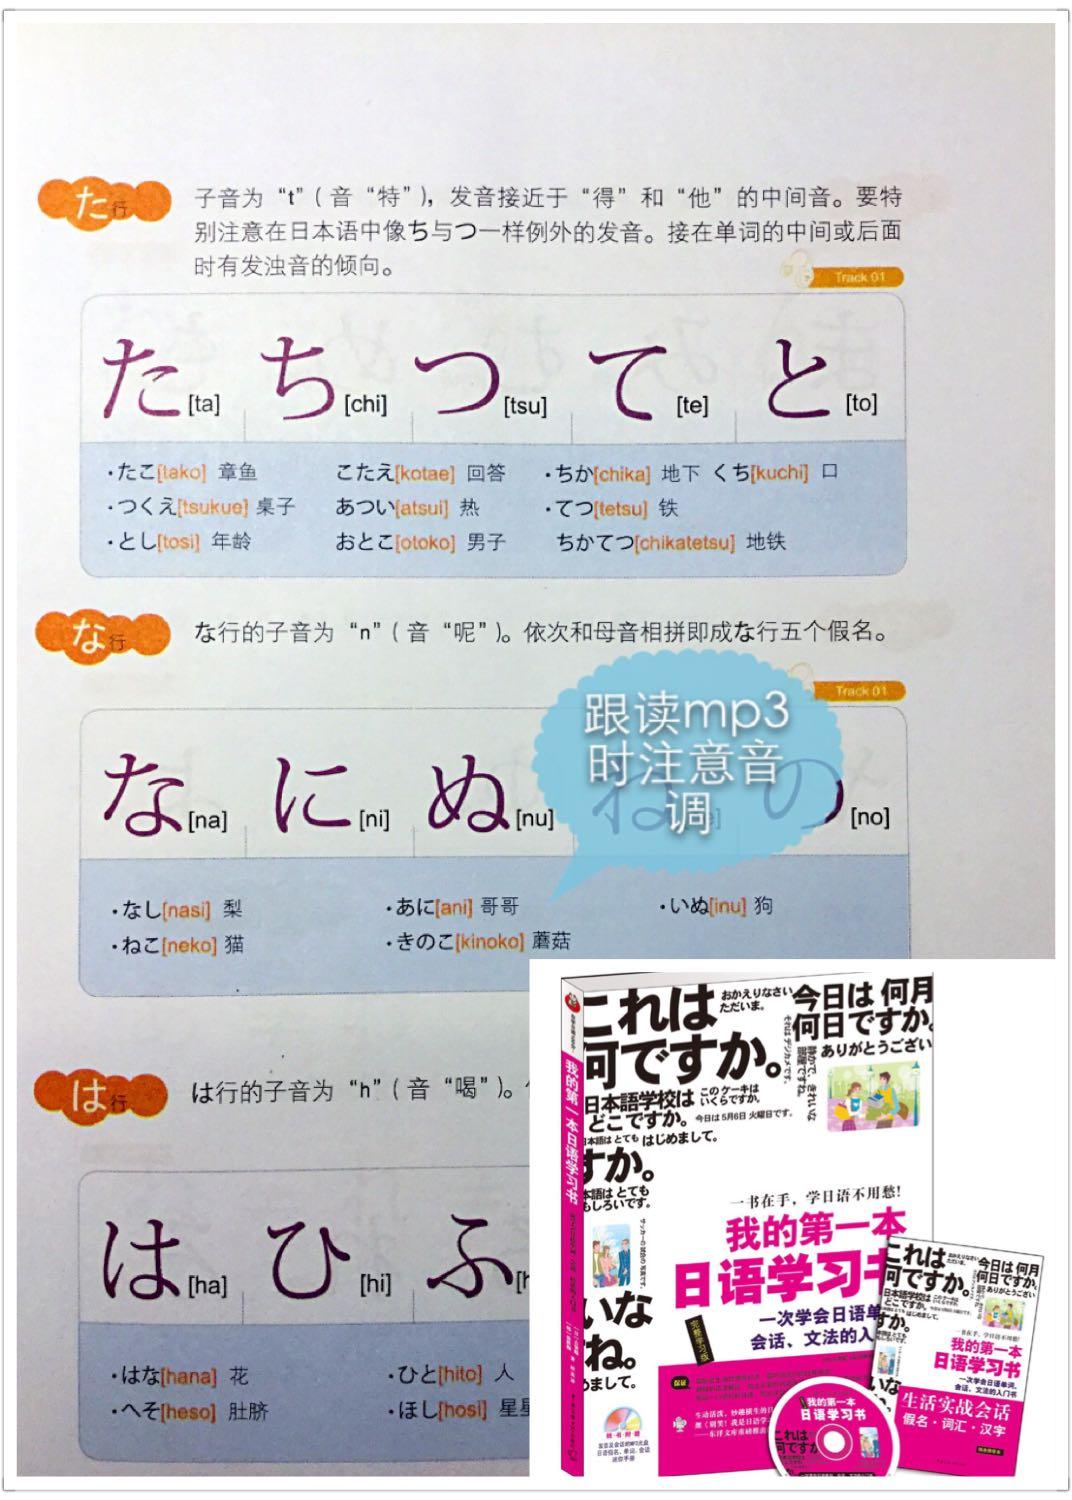 日语发音原理（15）——五十音（“清音”）列表 - 知乎